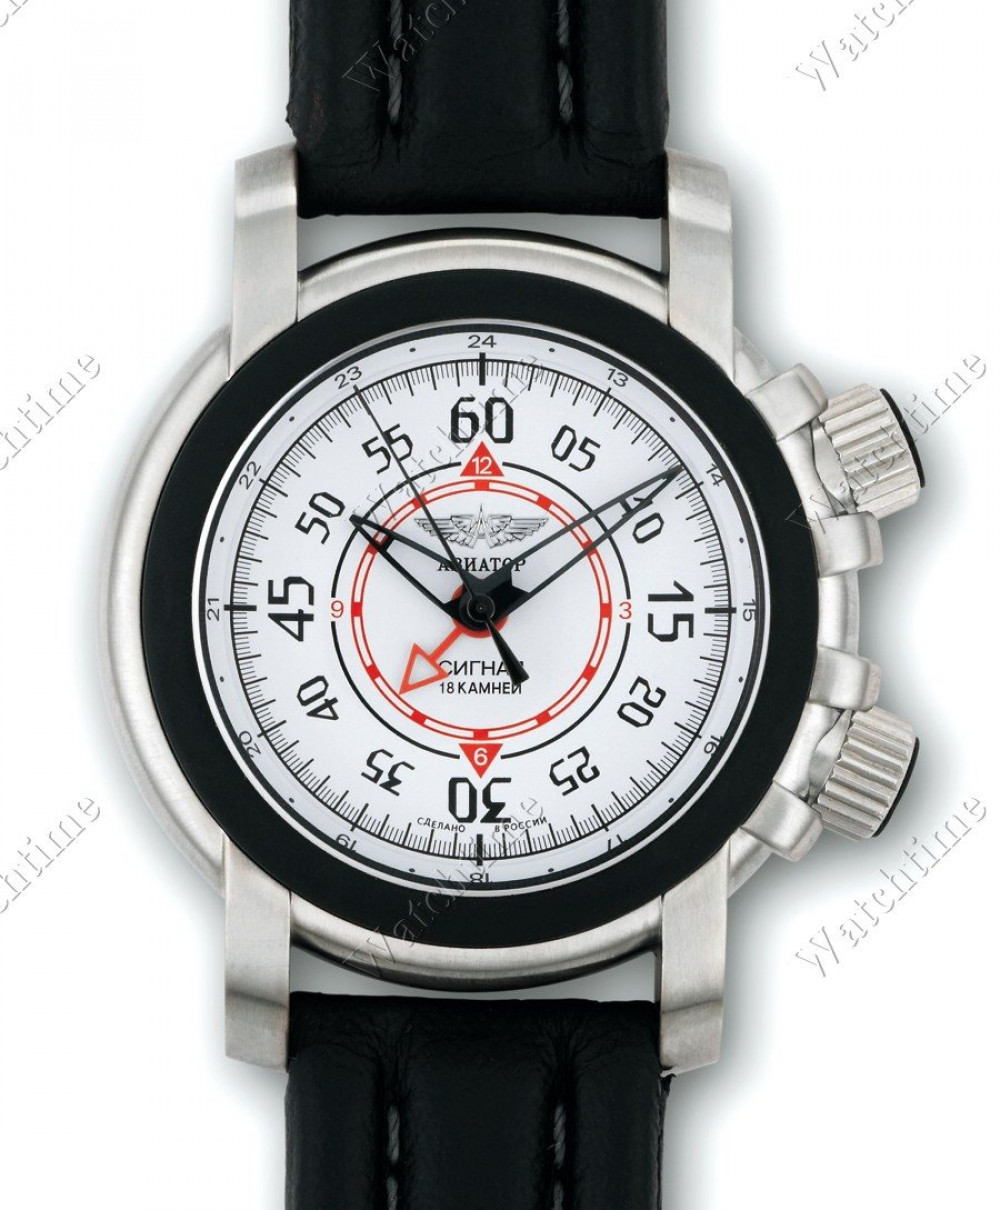 Zegarek firmy Aviator (Volmax/RU/Swiss), model Signal